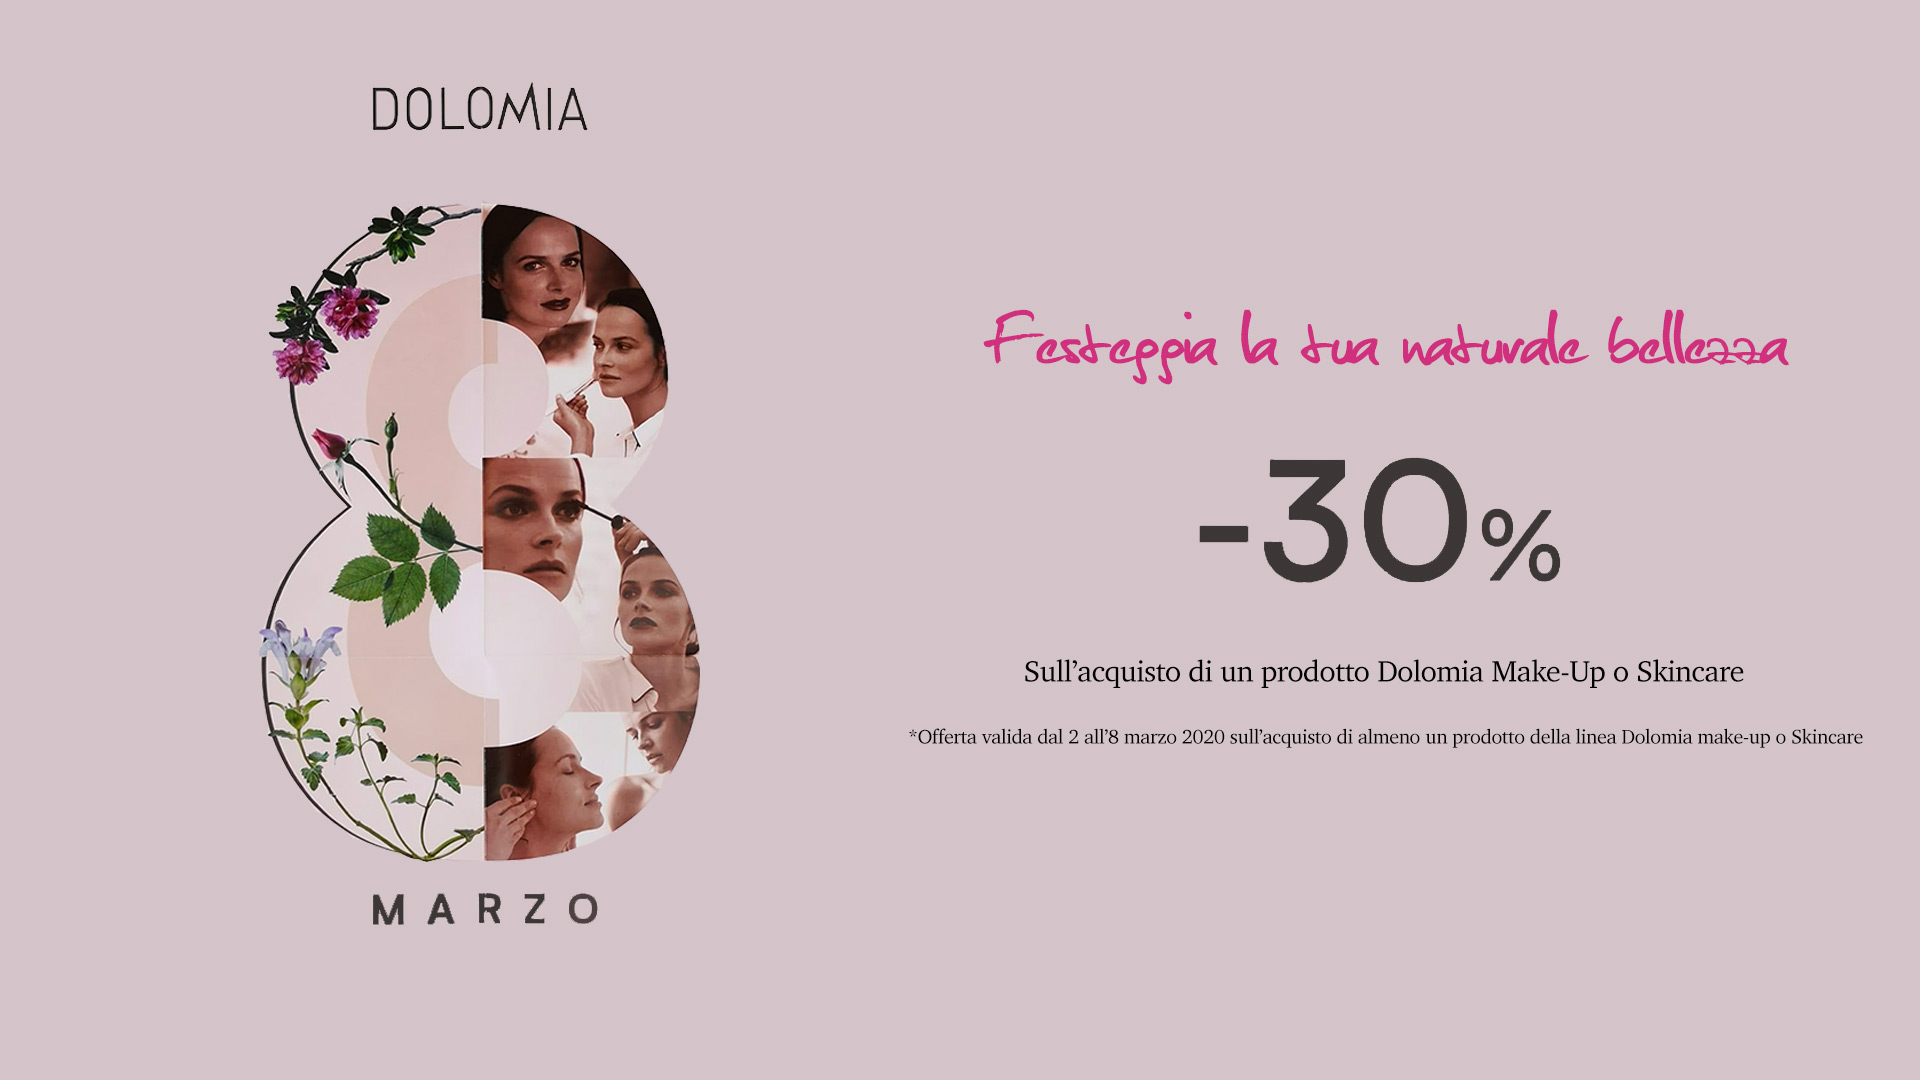 Dolomia - 8 marzo - Festeggia la tua naturale bellezza